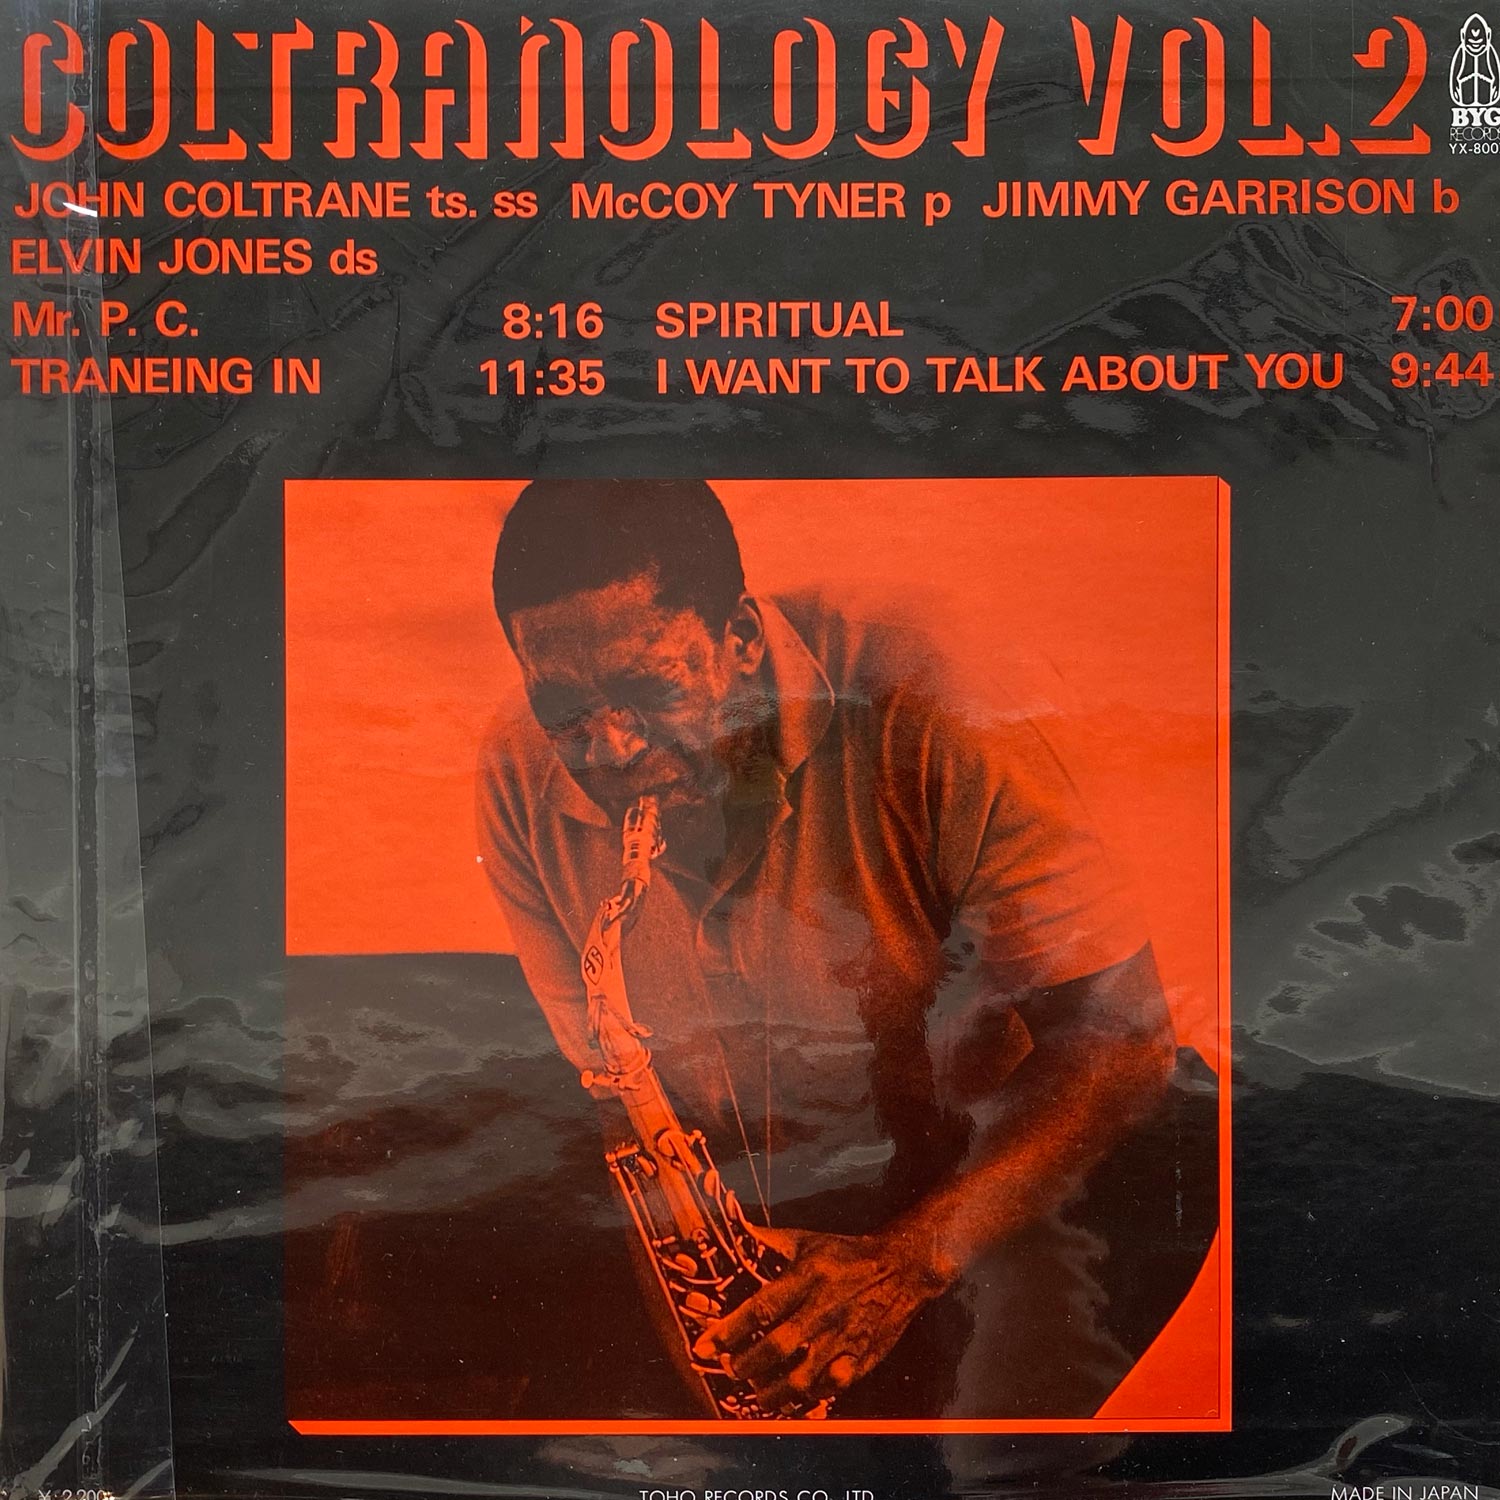 John Coltrane - Coltranology Vol. 2